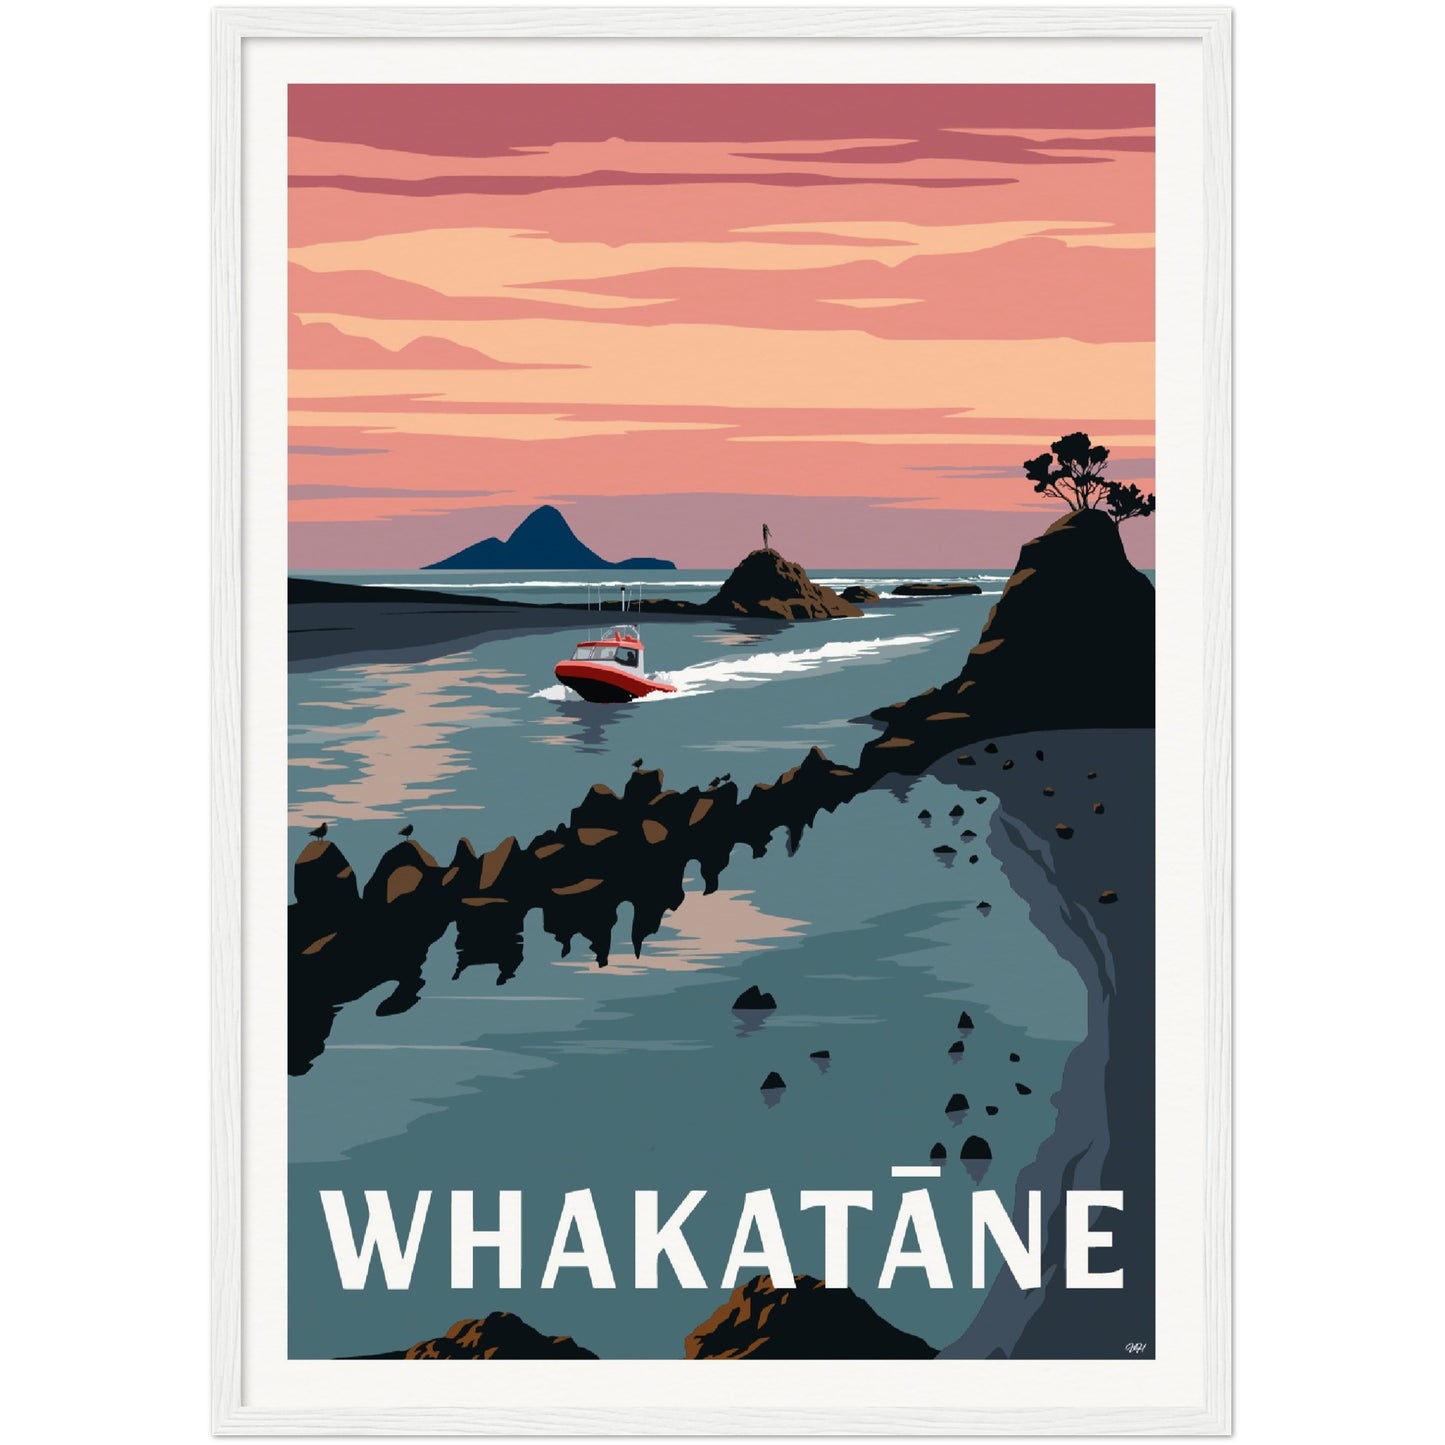 Whakatane Travel Poster, New Zealand